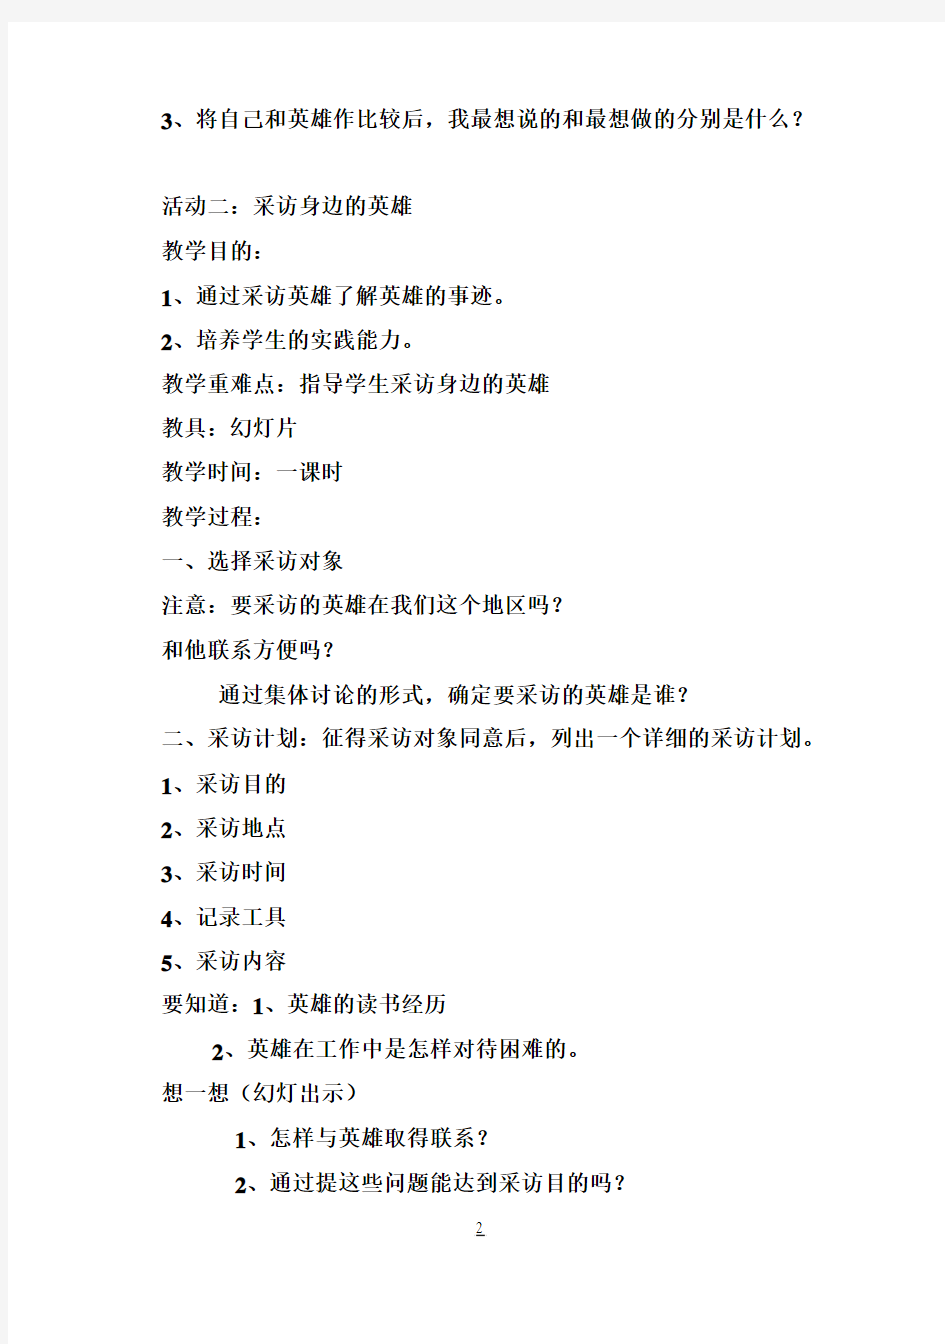 小学五年级下册综合实践活动教案(上海科技教育出版社)1